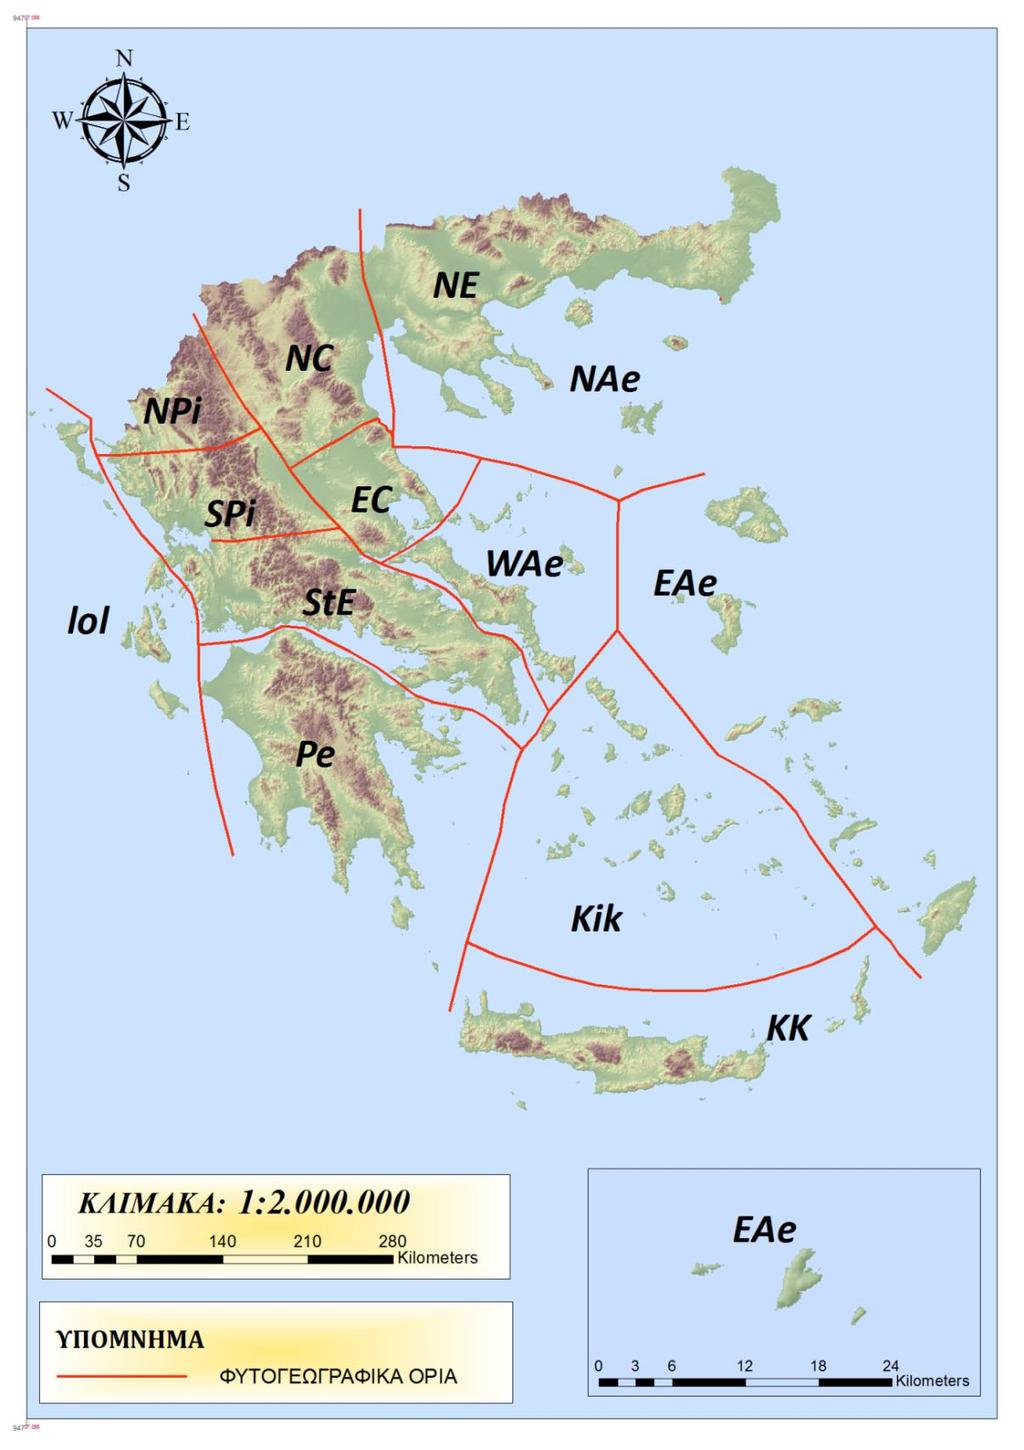 Σχήμα 7: Οριοθέτηση των φυτογεωγραφικών περιοχών της Ελλάδας (αγγλικά αρκτικόλεξα